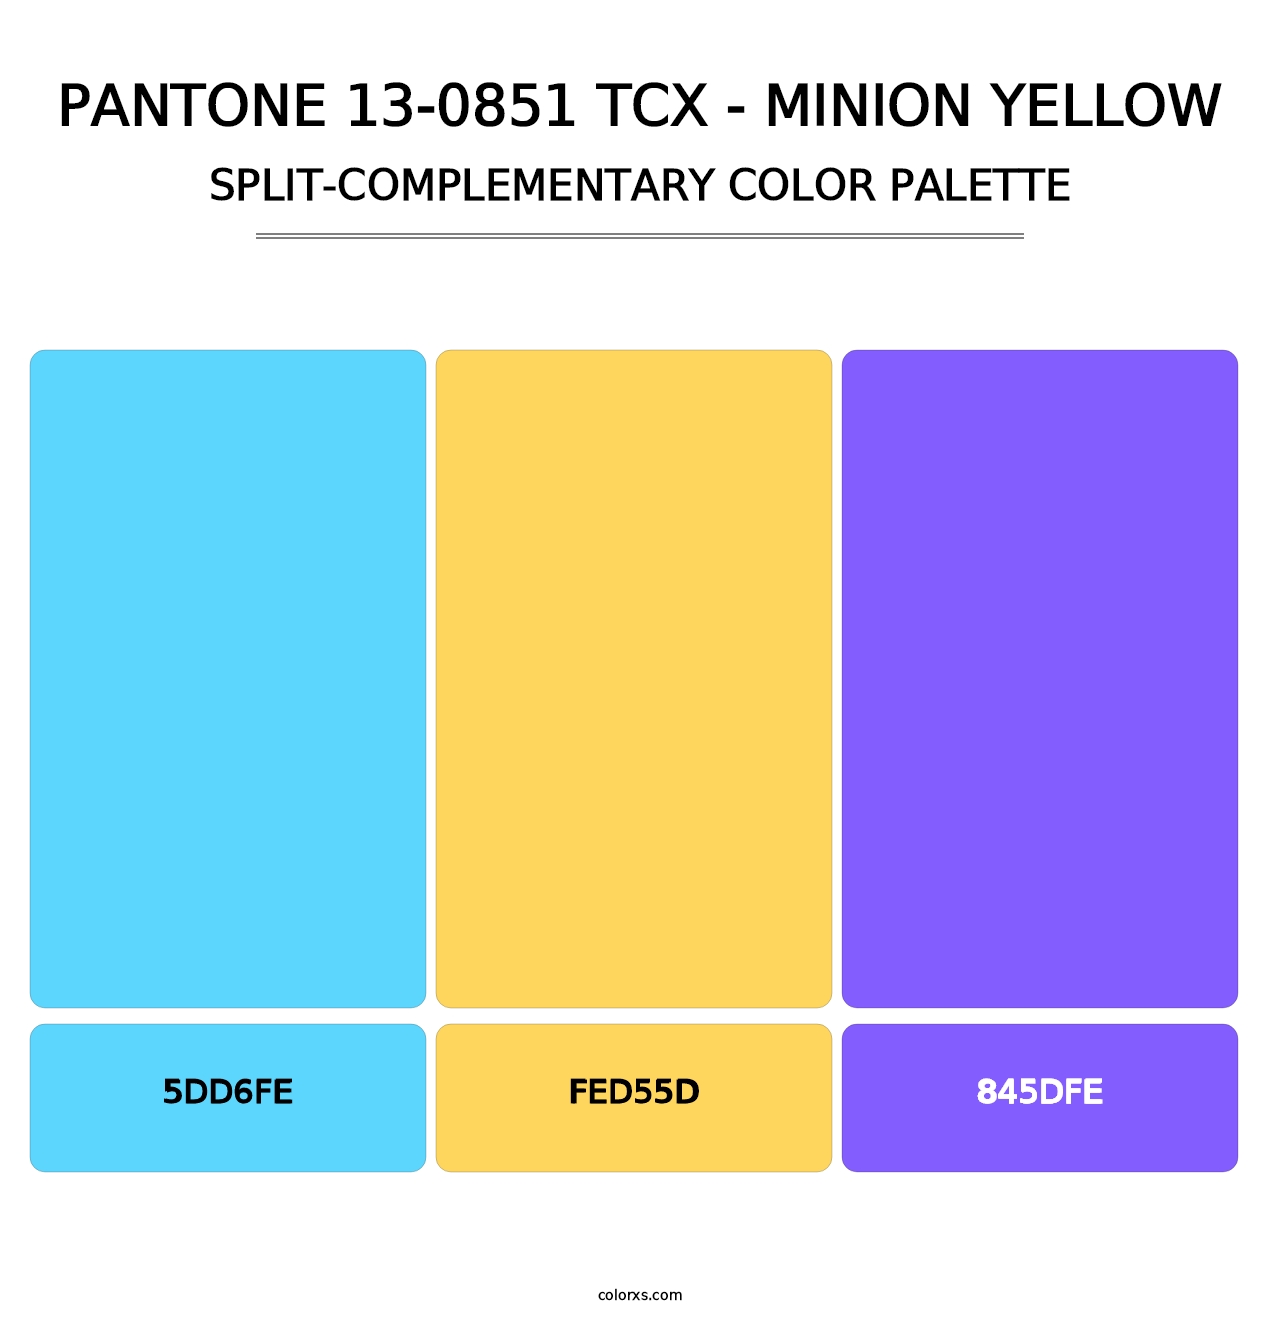 PANTONE 13-0851 TCX - Minion Yellow - Split-Complementary Color Palette